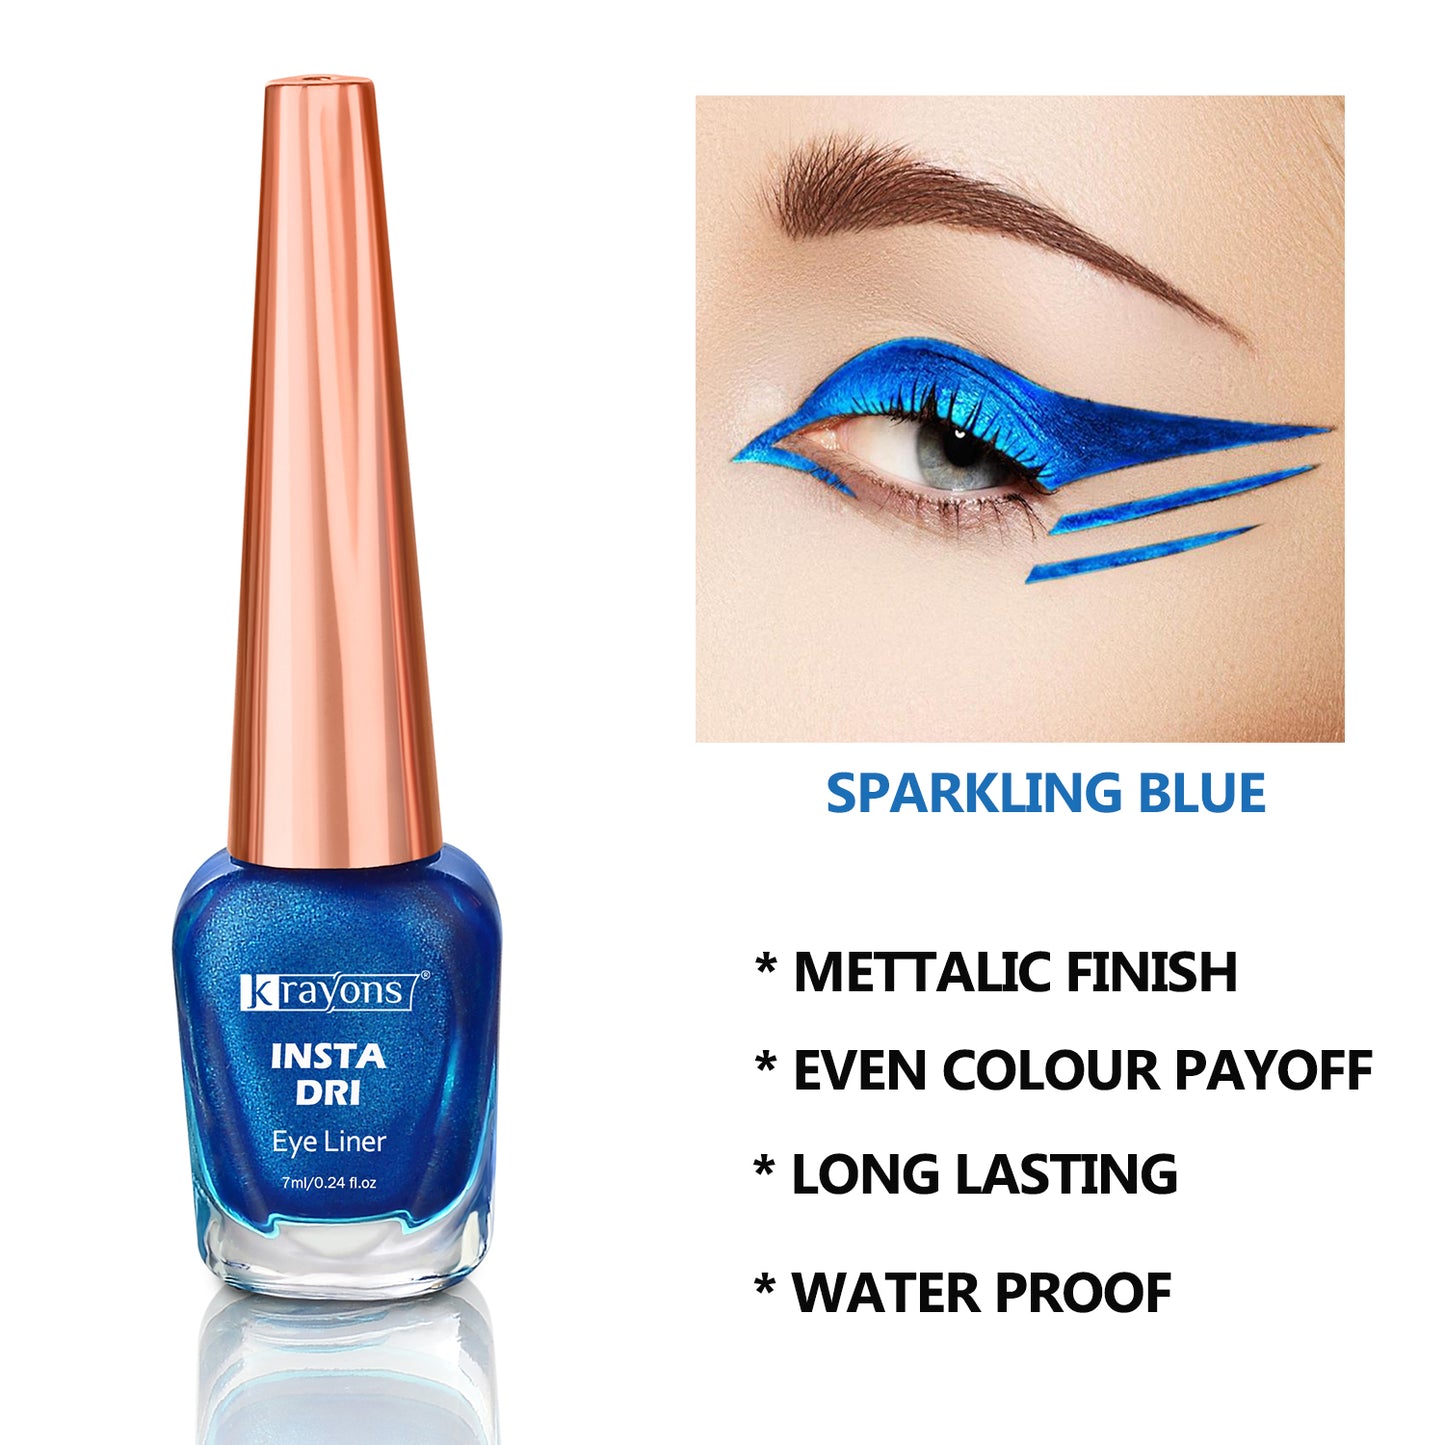 Krayons Insta Dri Sparkling Eyeliner, Silver, Brown, Blue, Waterproof, Longlasting, 7ml Each, Combo (Pack of 3)